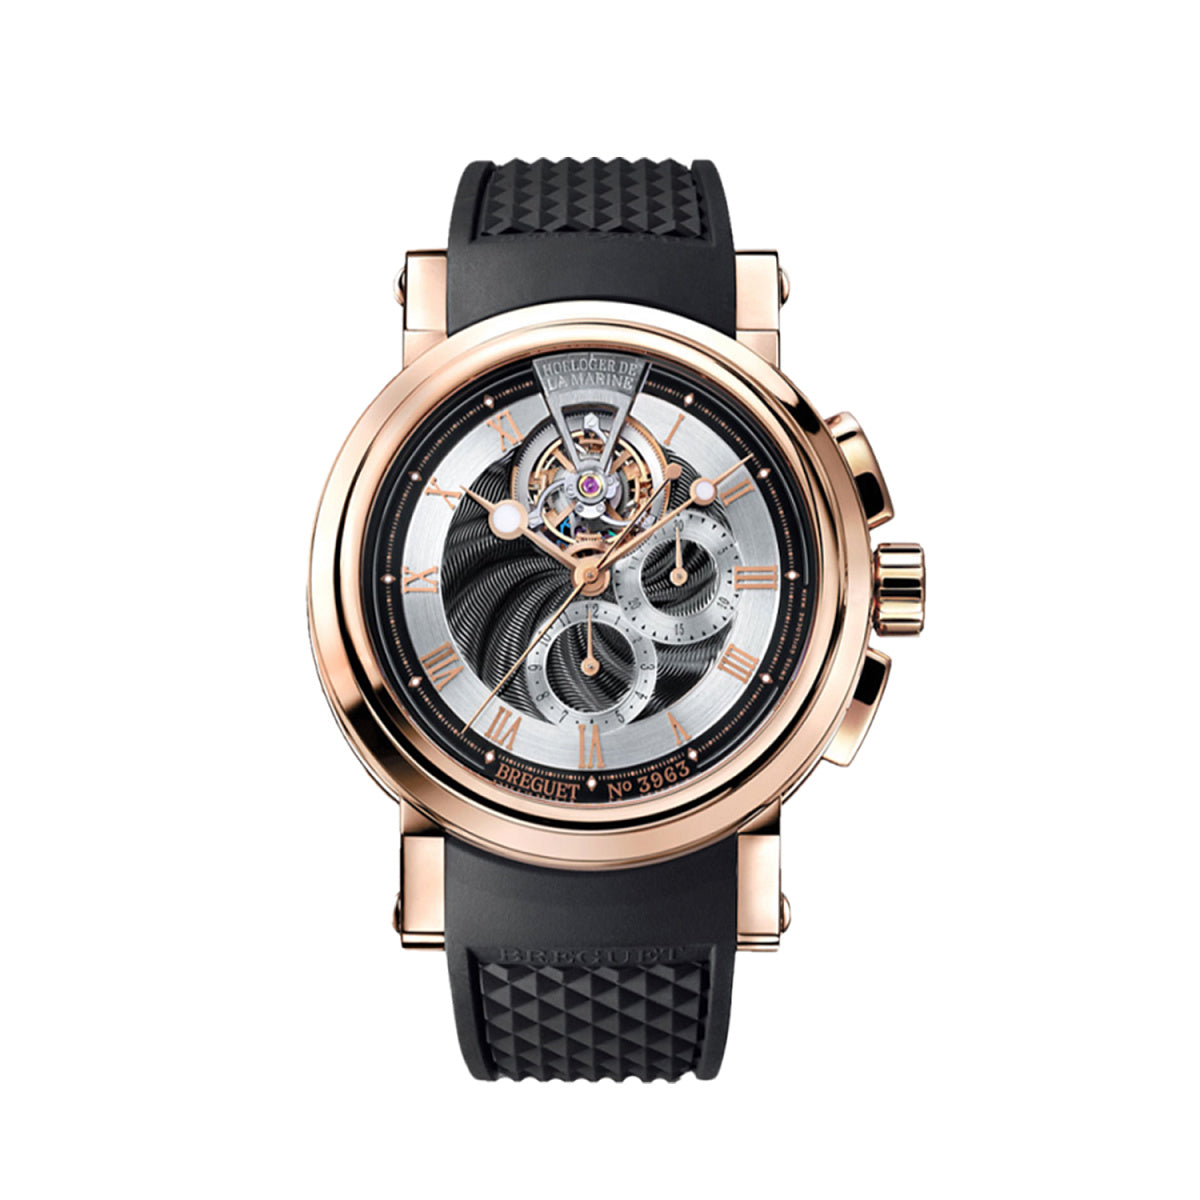 Breguet Marine Tourbillon Chronograph 18K Rose Gold Men's Watch